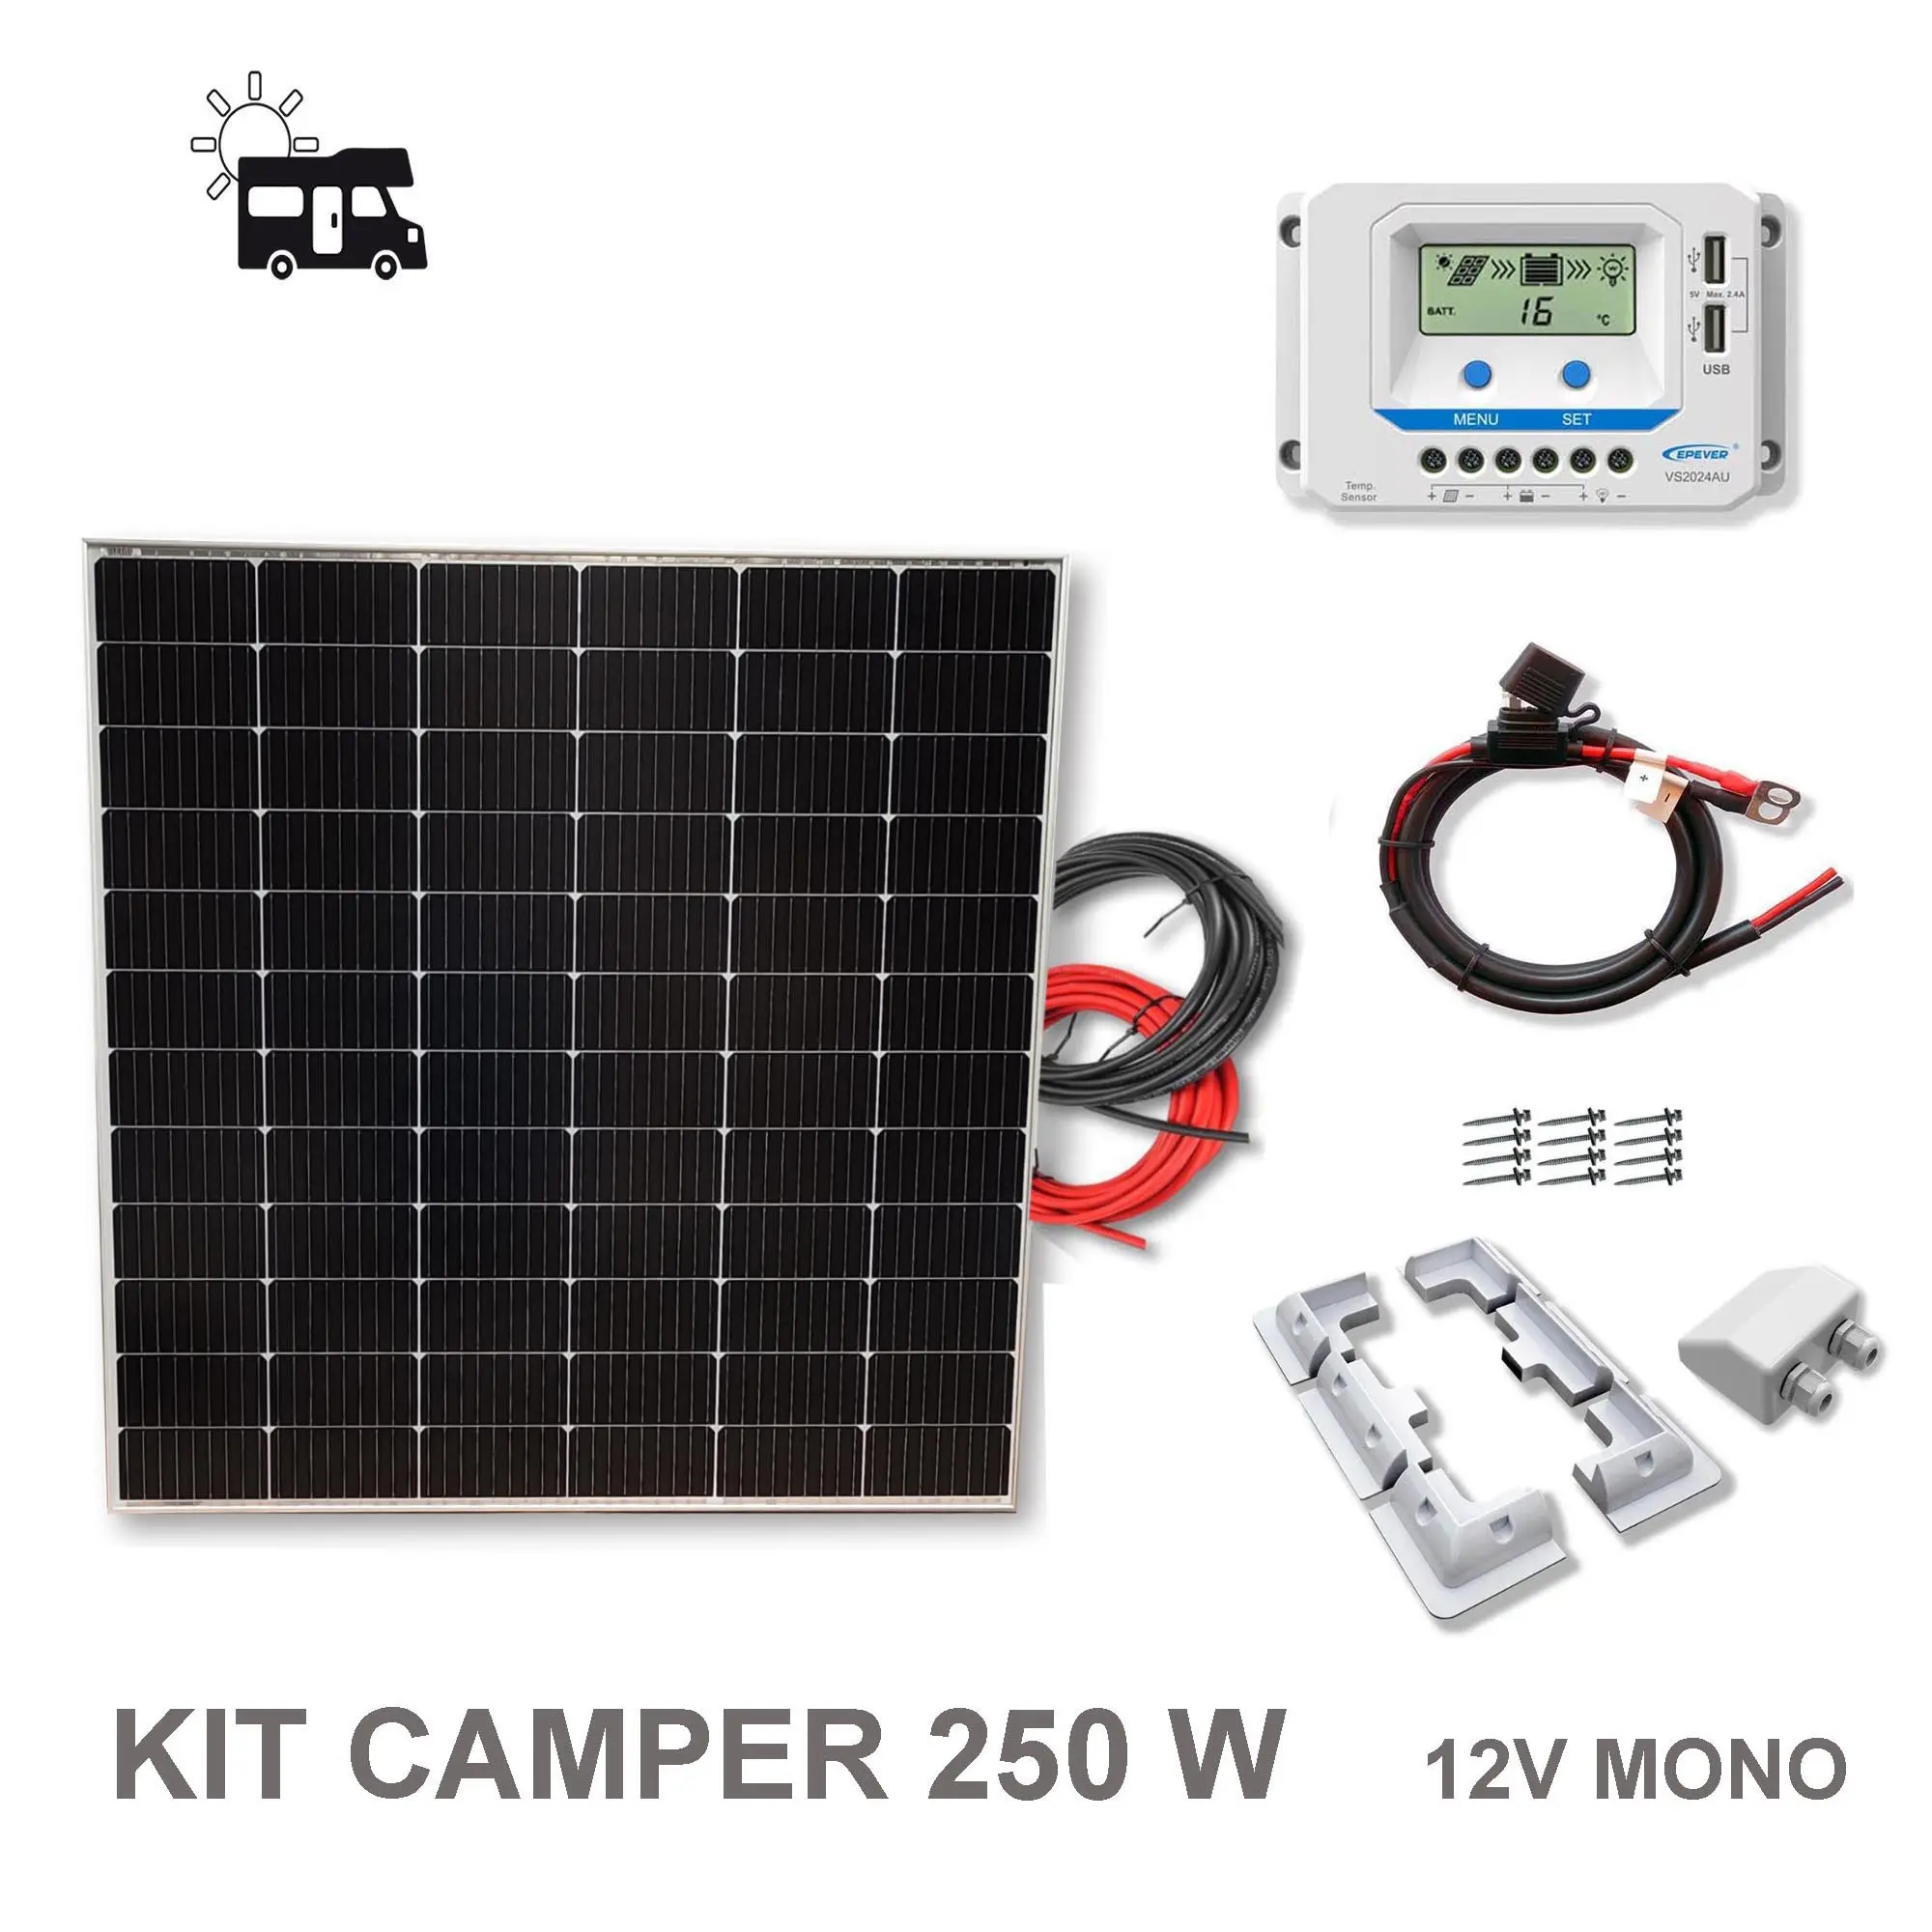 kit placa solar caravana sin baterias - Cómo funciona un panel solar sin batería